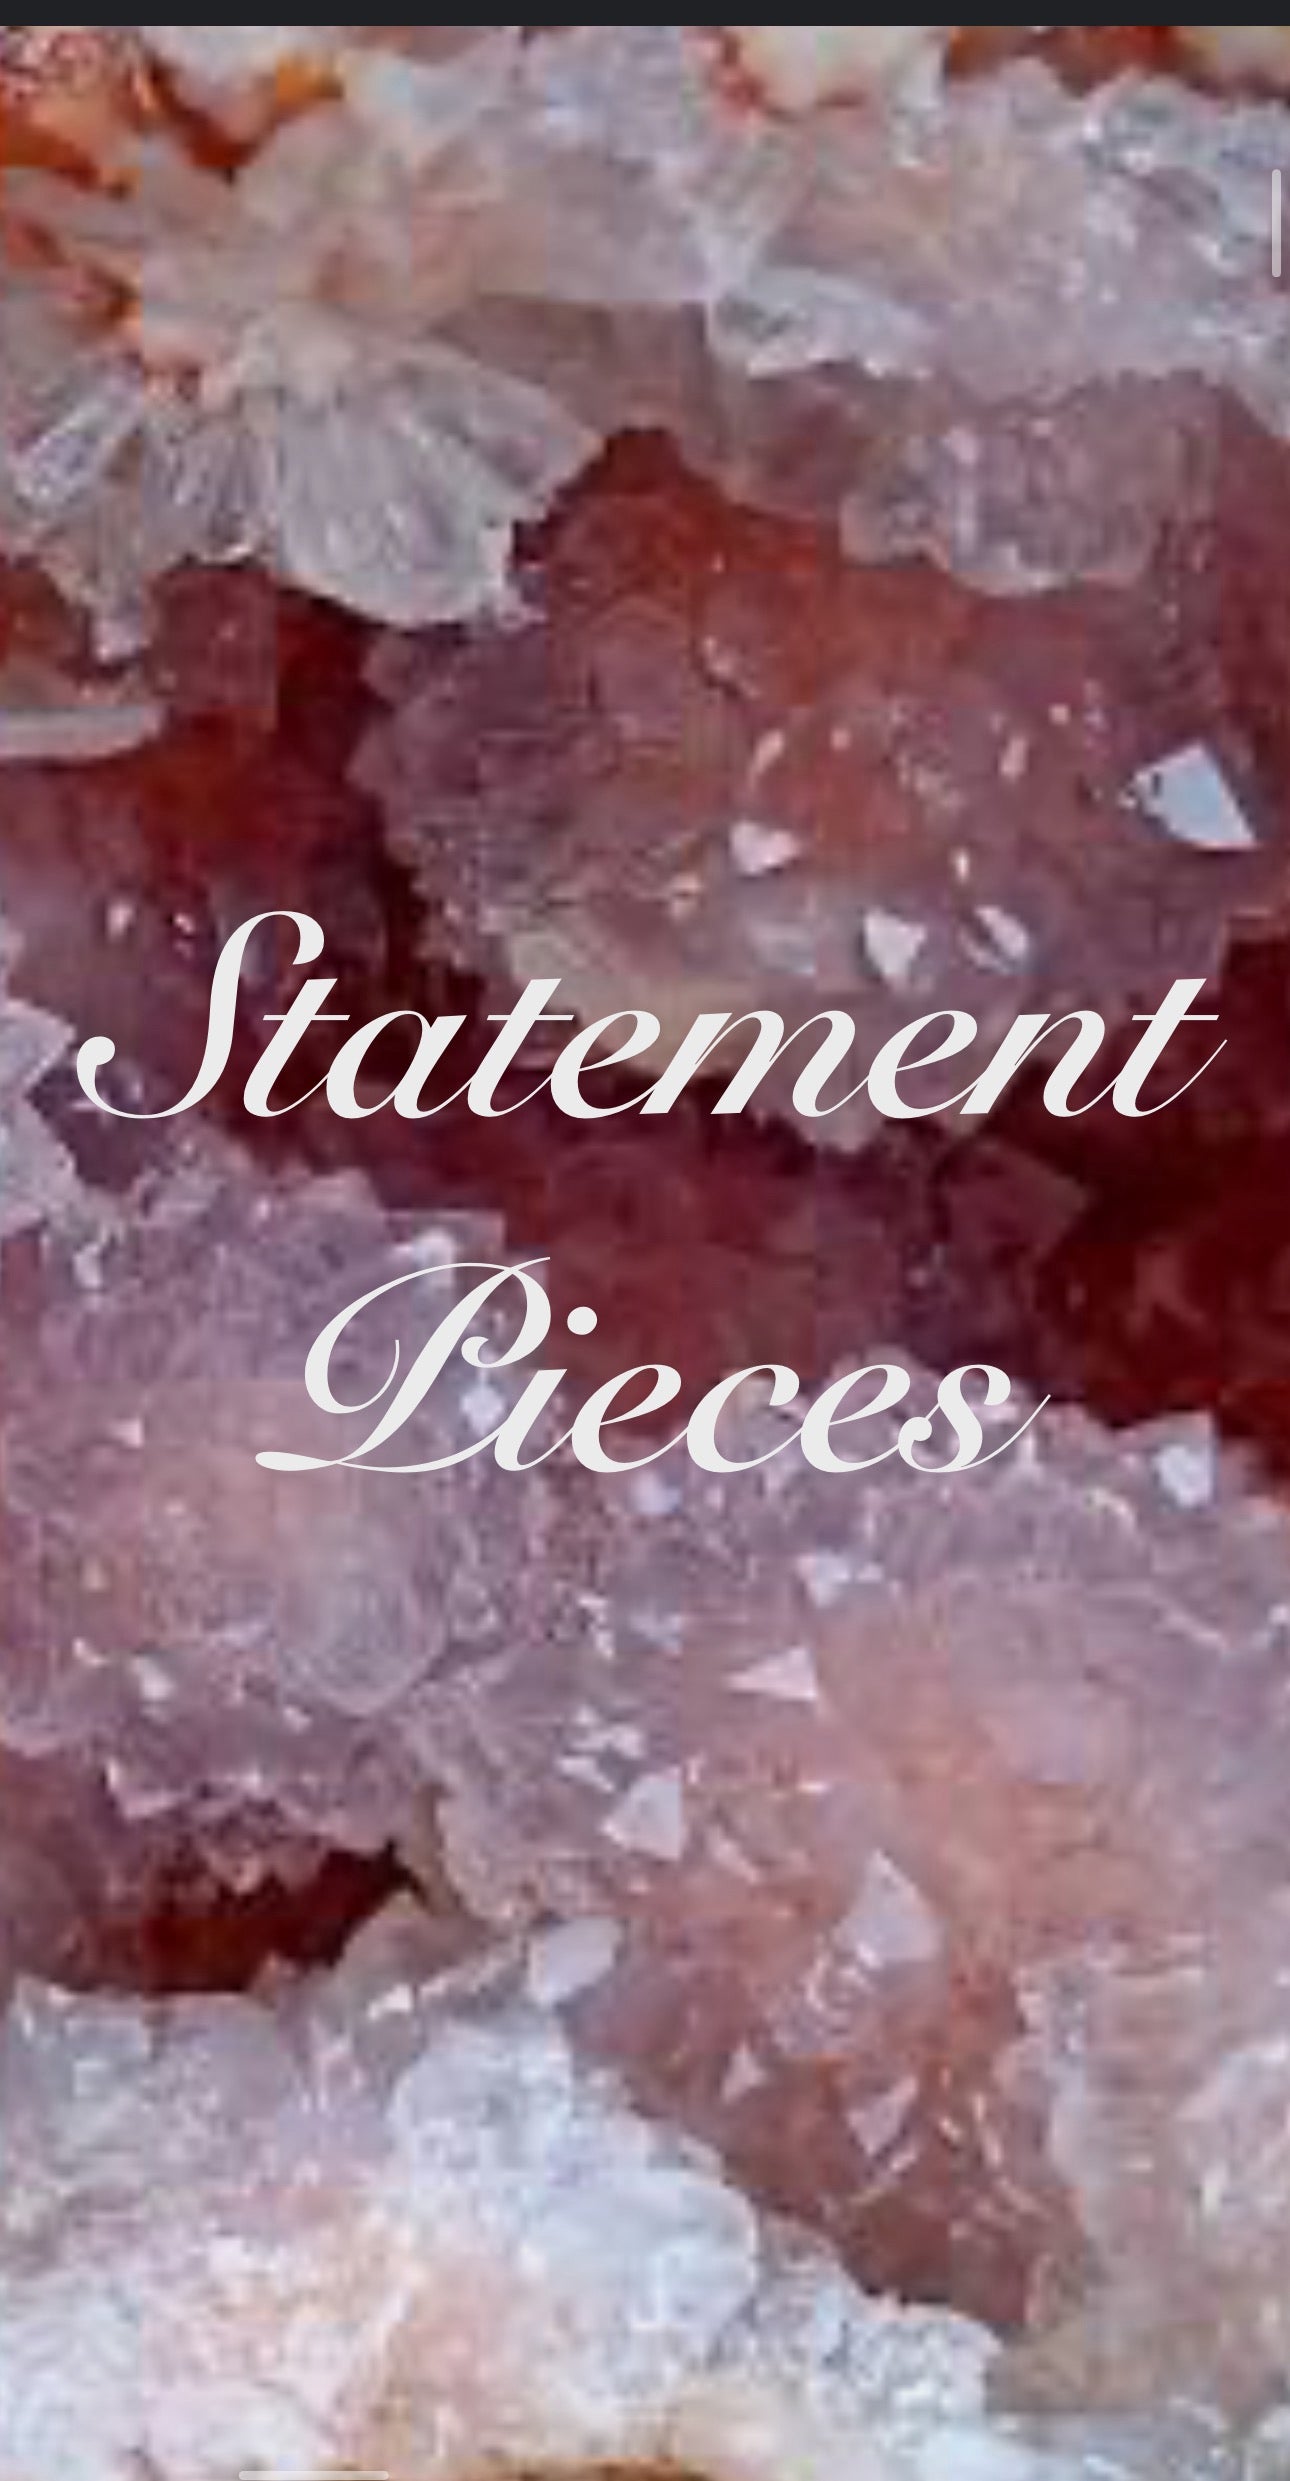 Statement pieces